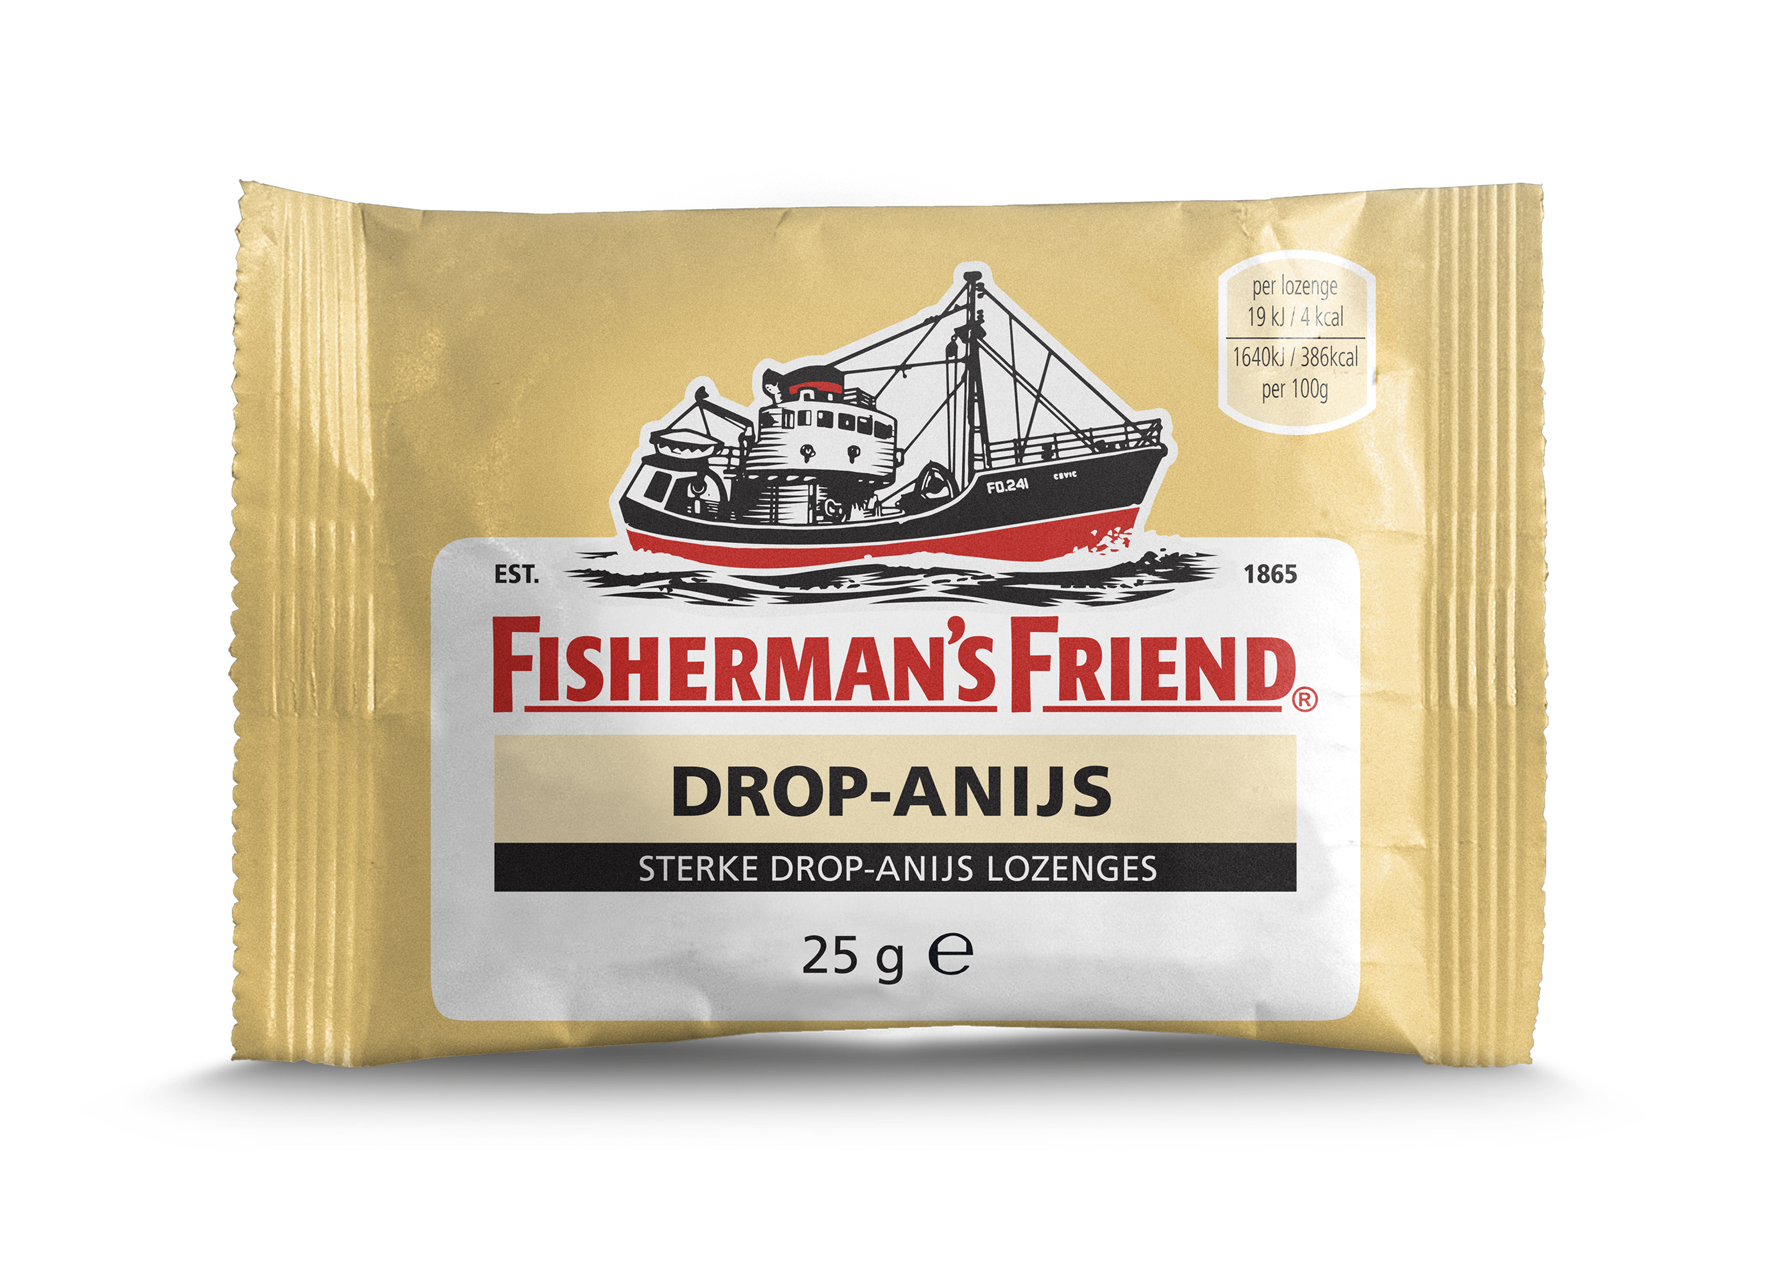 13878 Fisherman's friend drop-anijs 0,90 1x24 zak